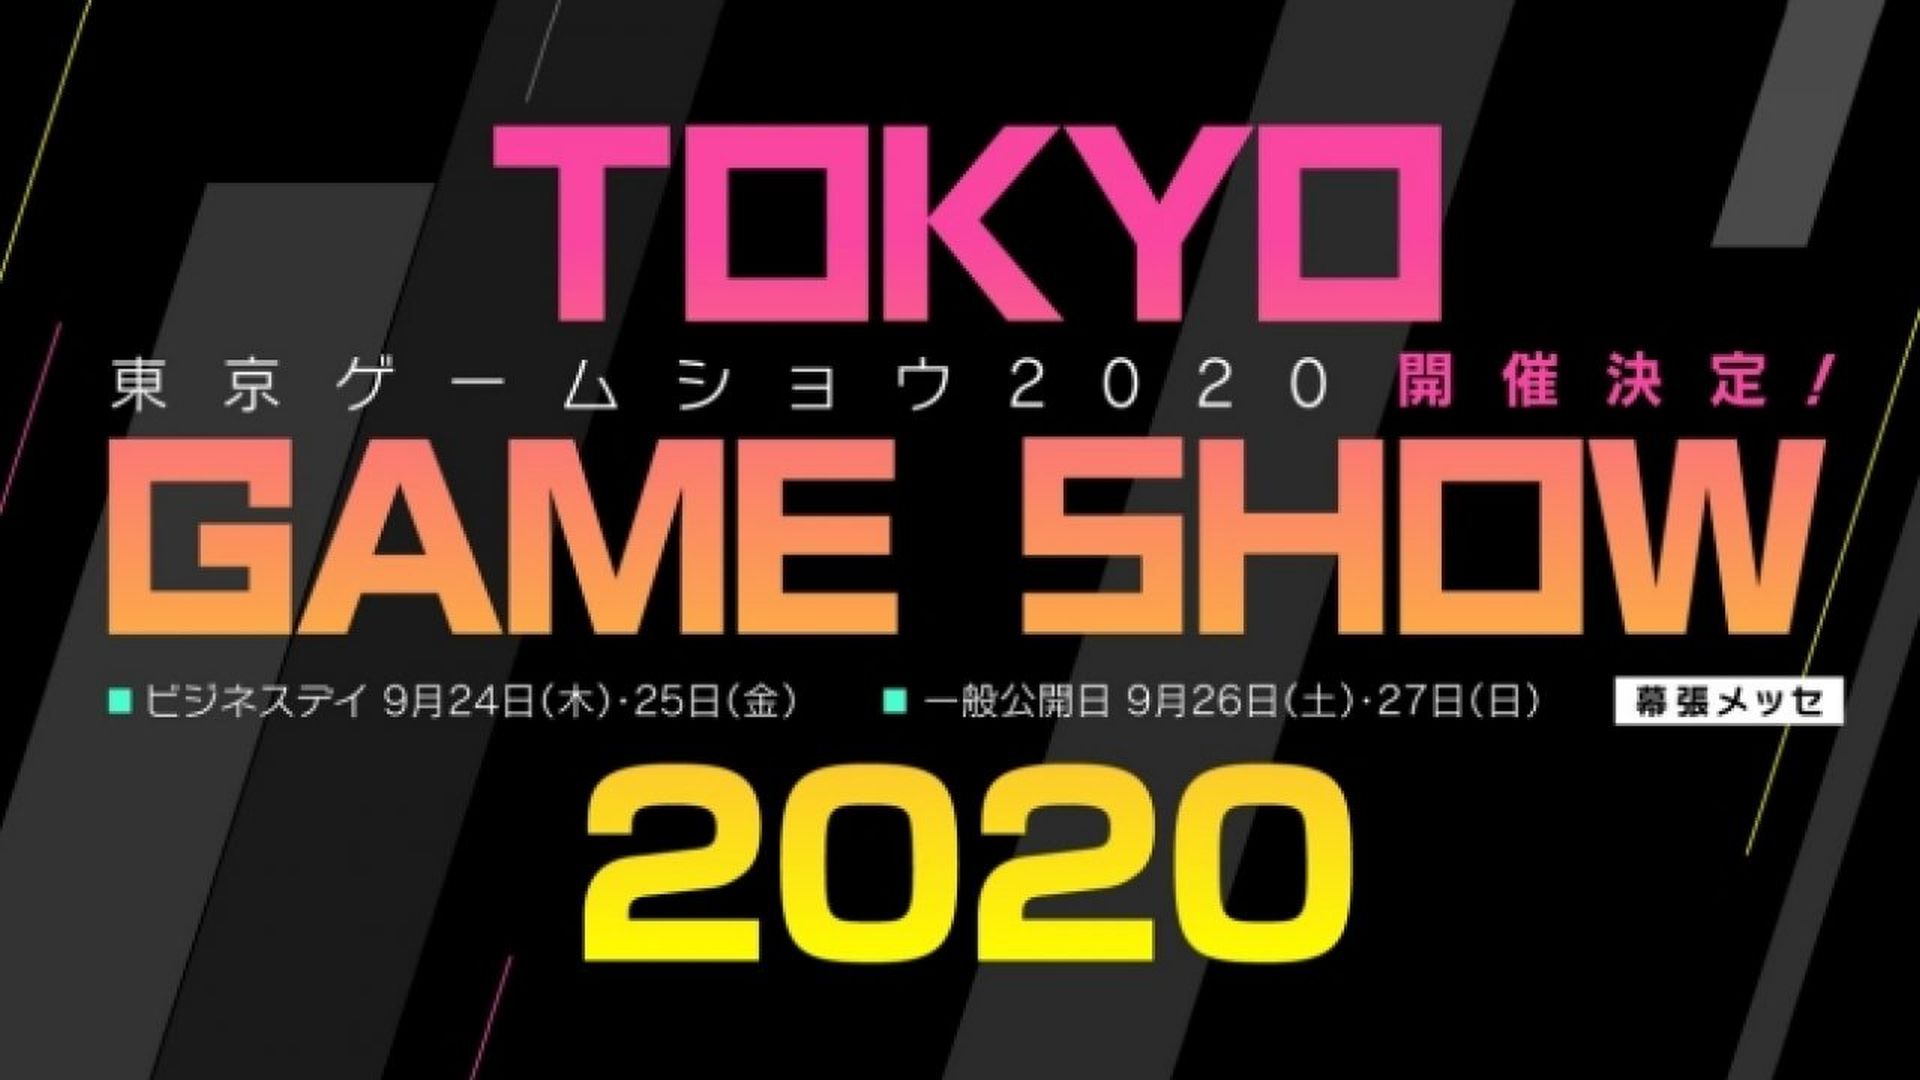 Tokio Game Show 2020